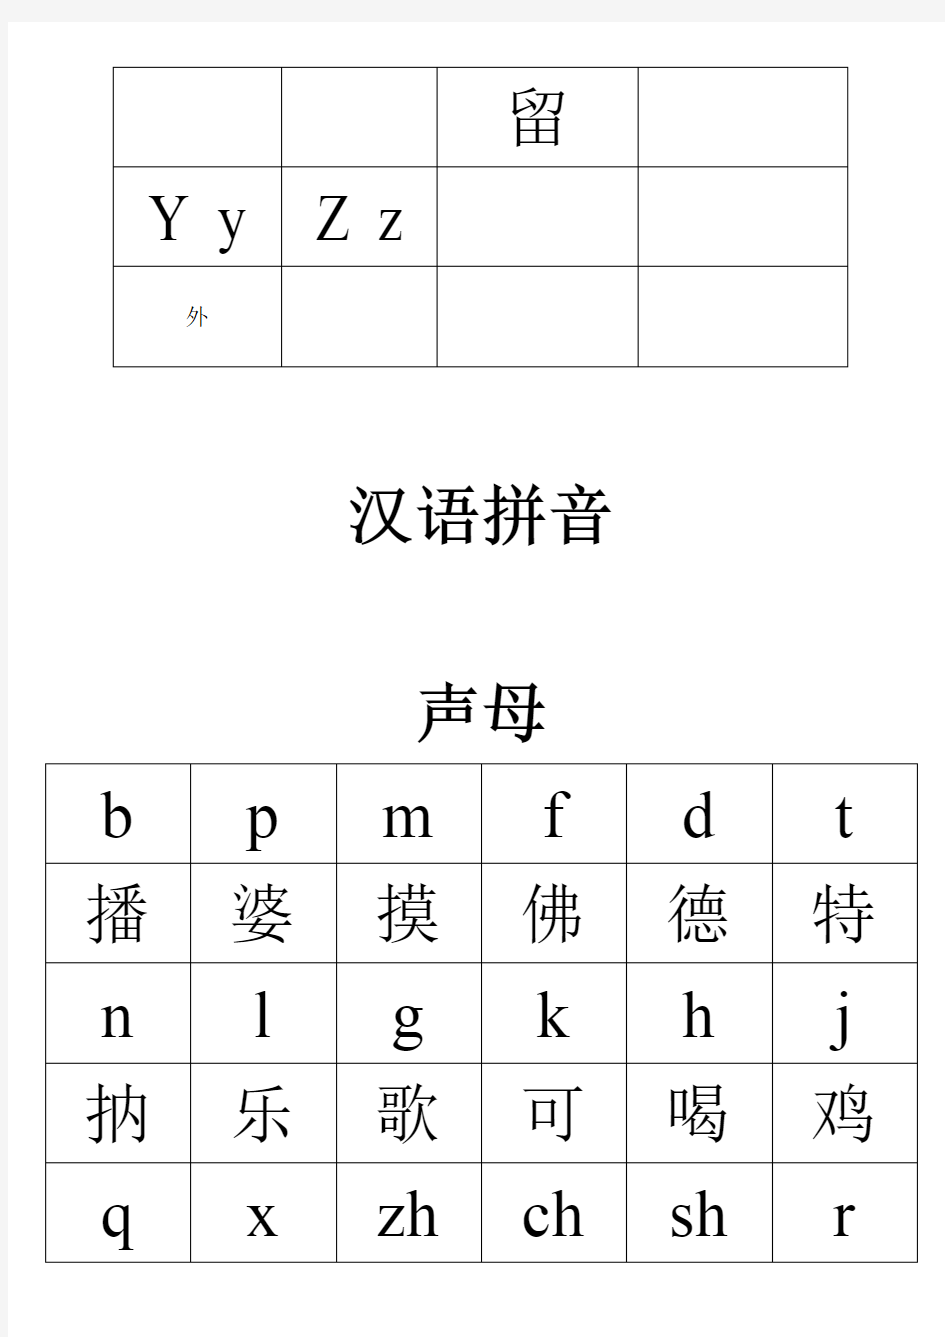 成人或老年人汉语拼音和英文字母表